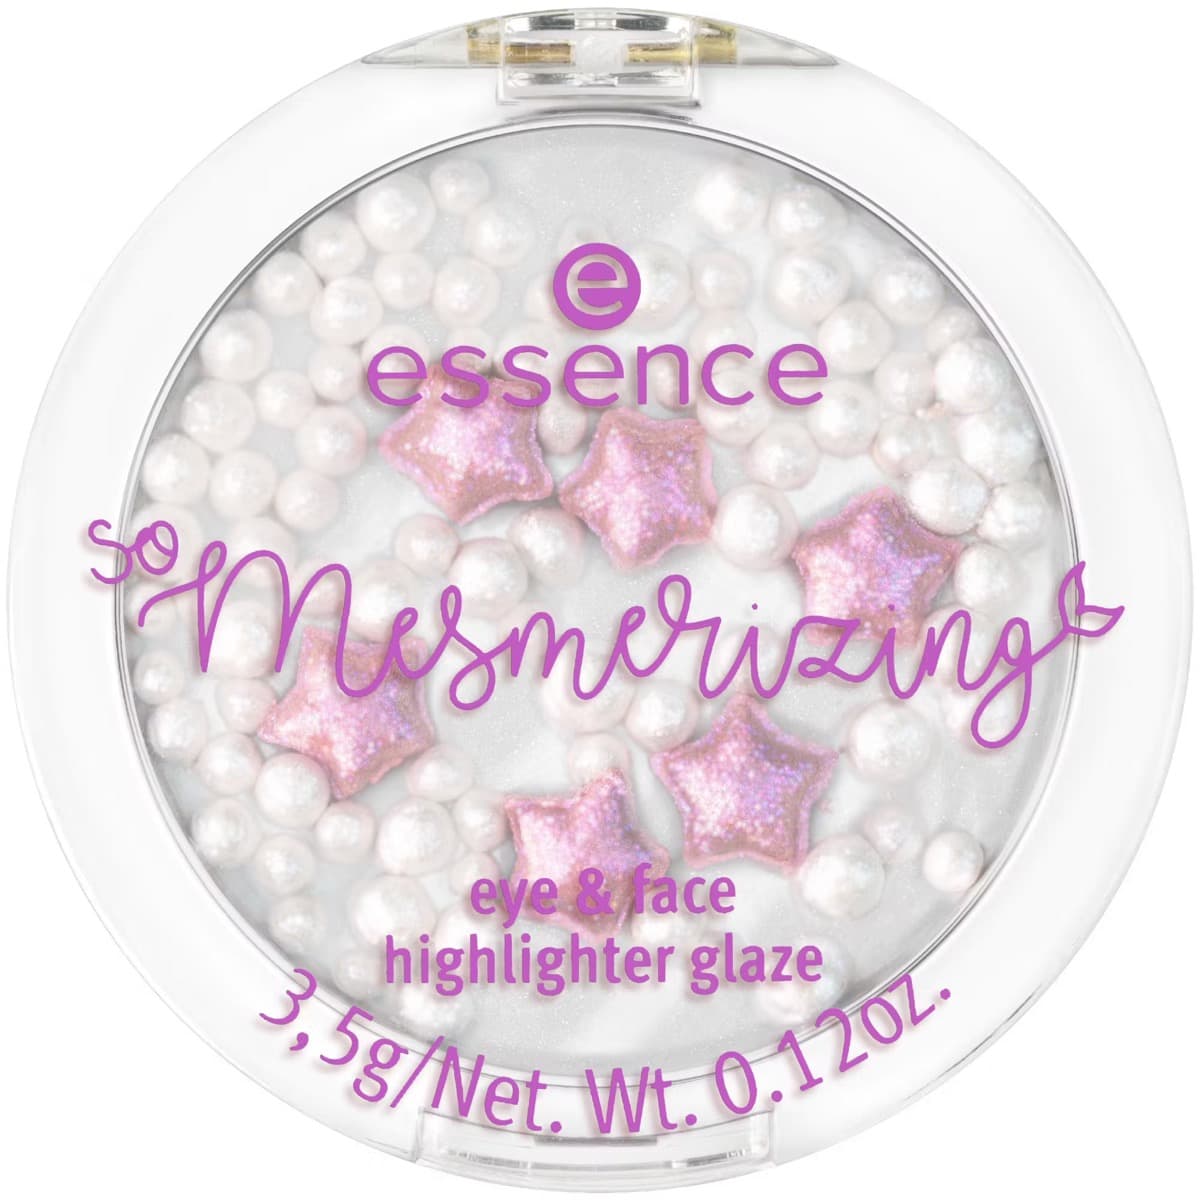 So Mesmerizing Eye & Face Highlighter Glaze 01